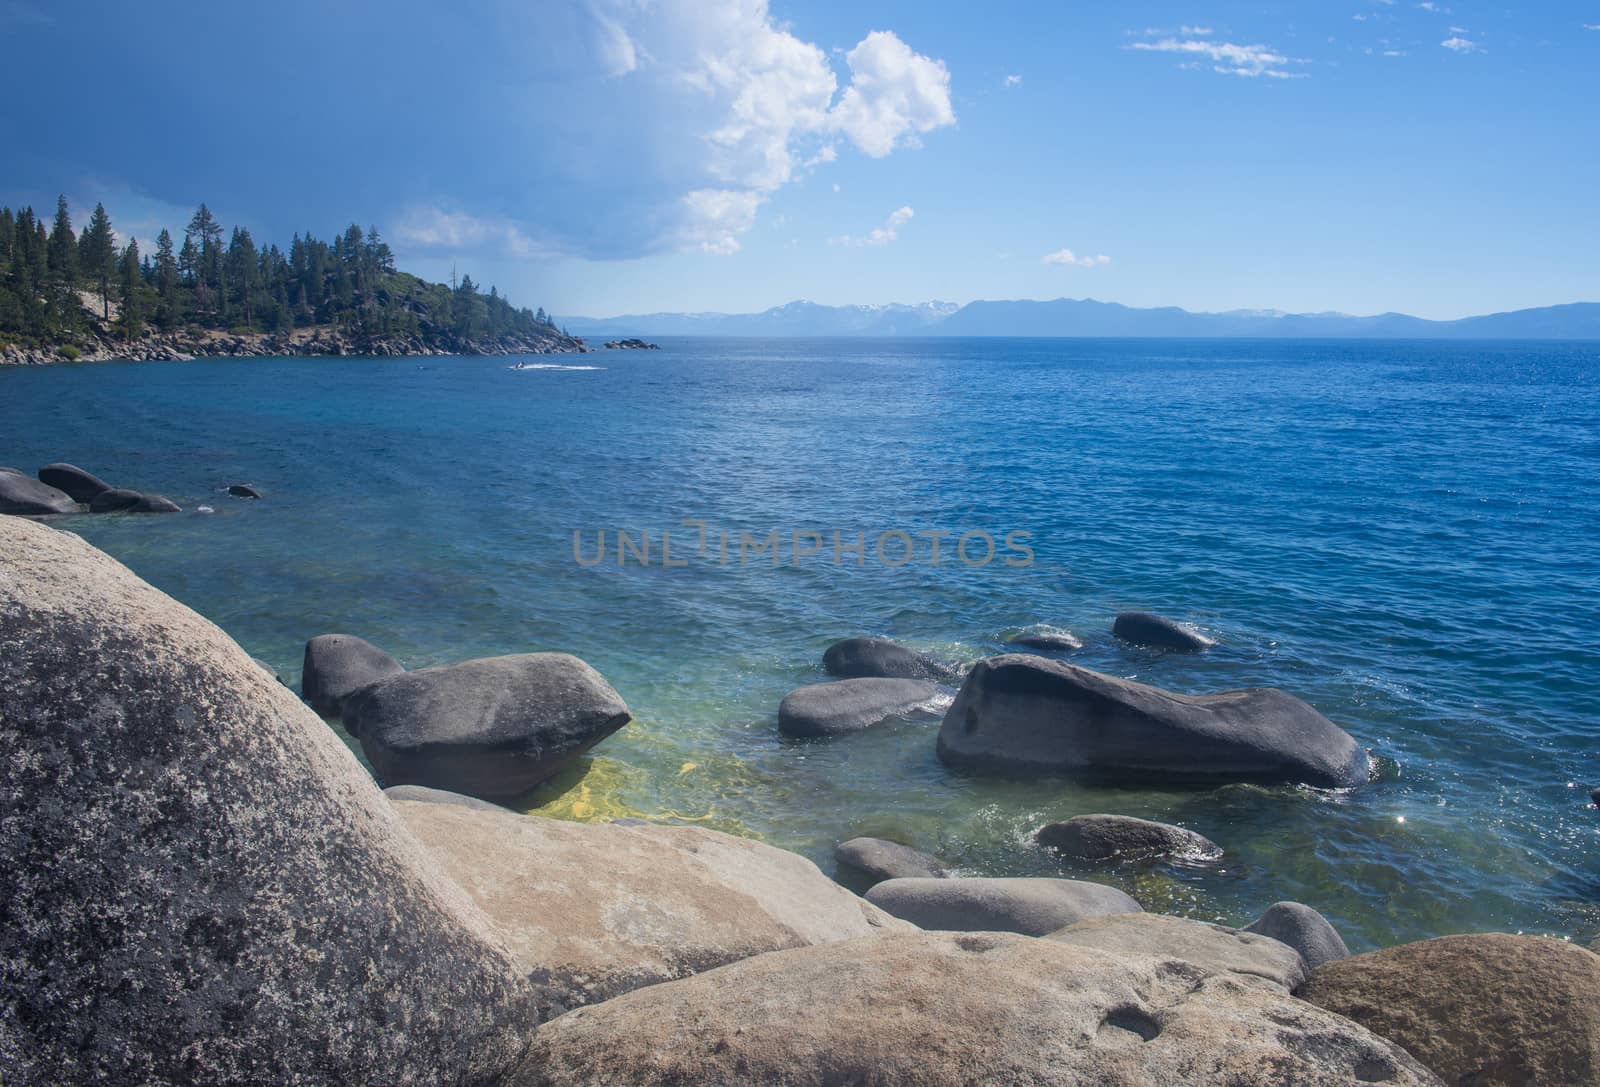 Lake Tahoe by kobby_dagan